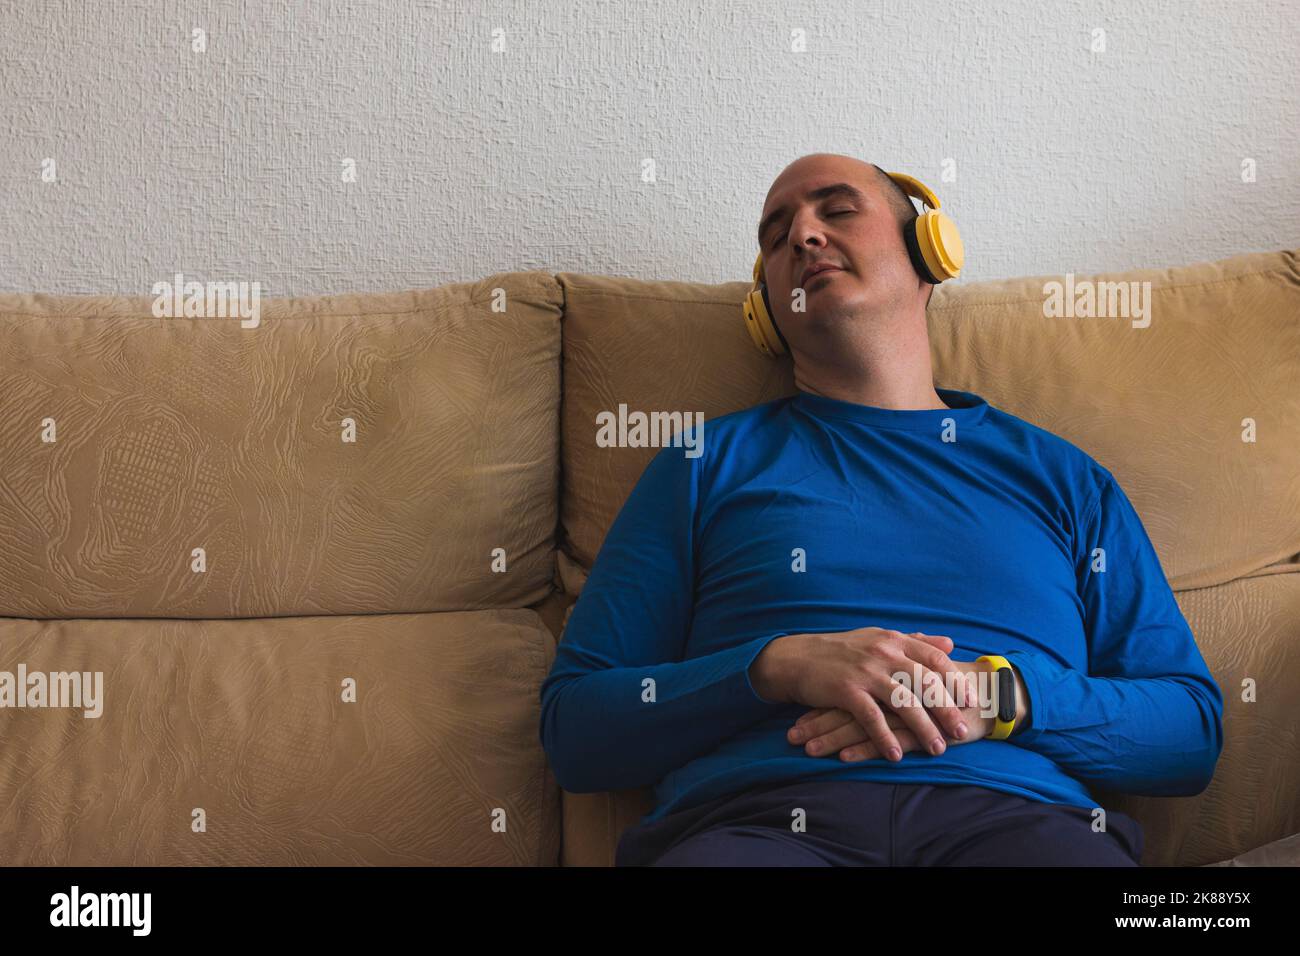 Un hombre caucásico calvo vestido con una camiseta azul de manga larga está dormido sentado en un sofá mientras lleva auriculares amarillos. Foto de stock